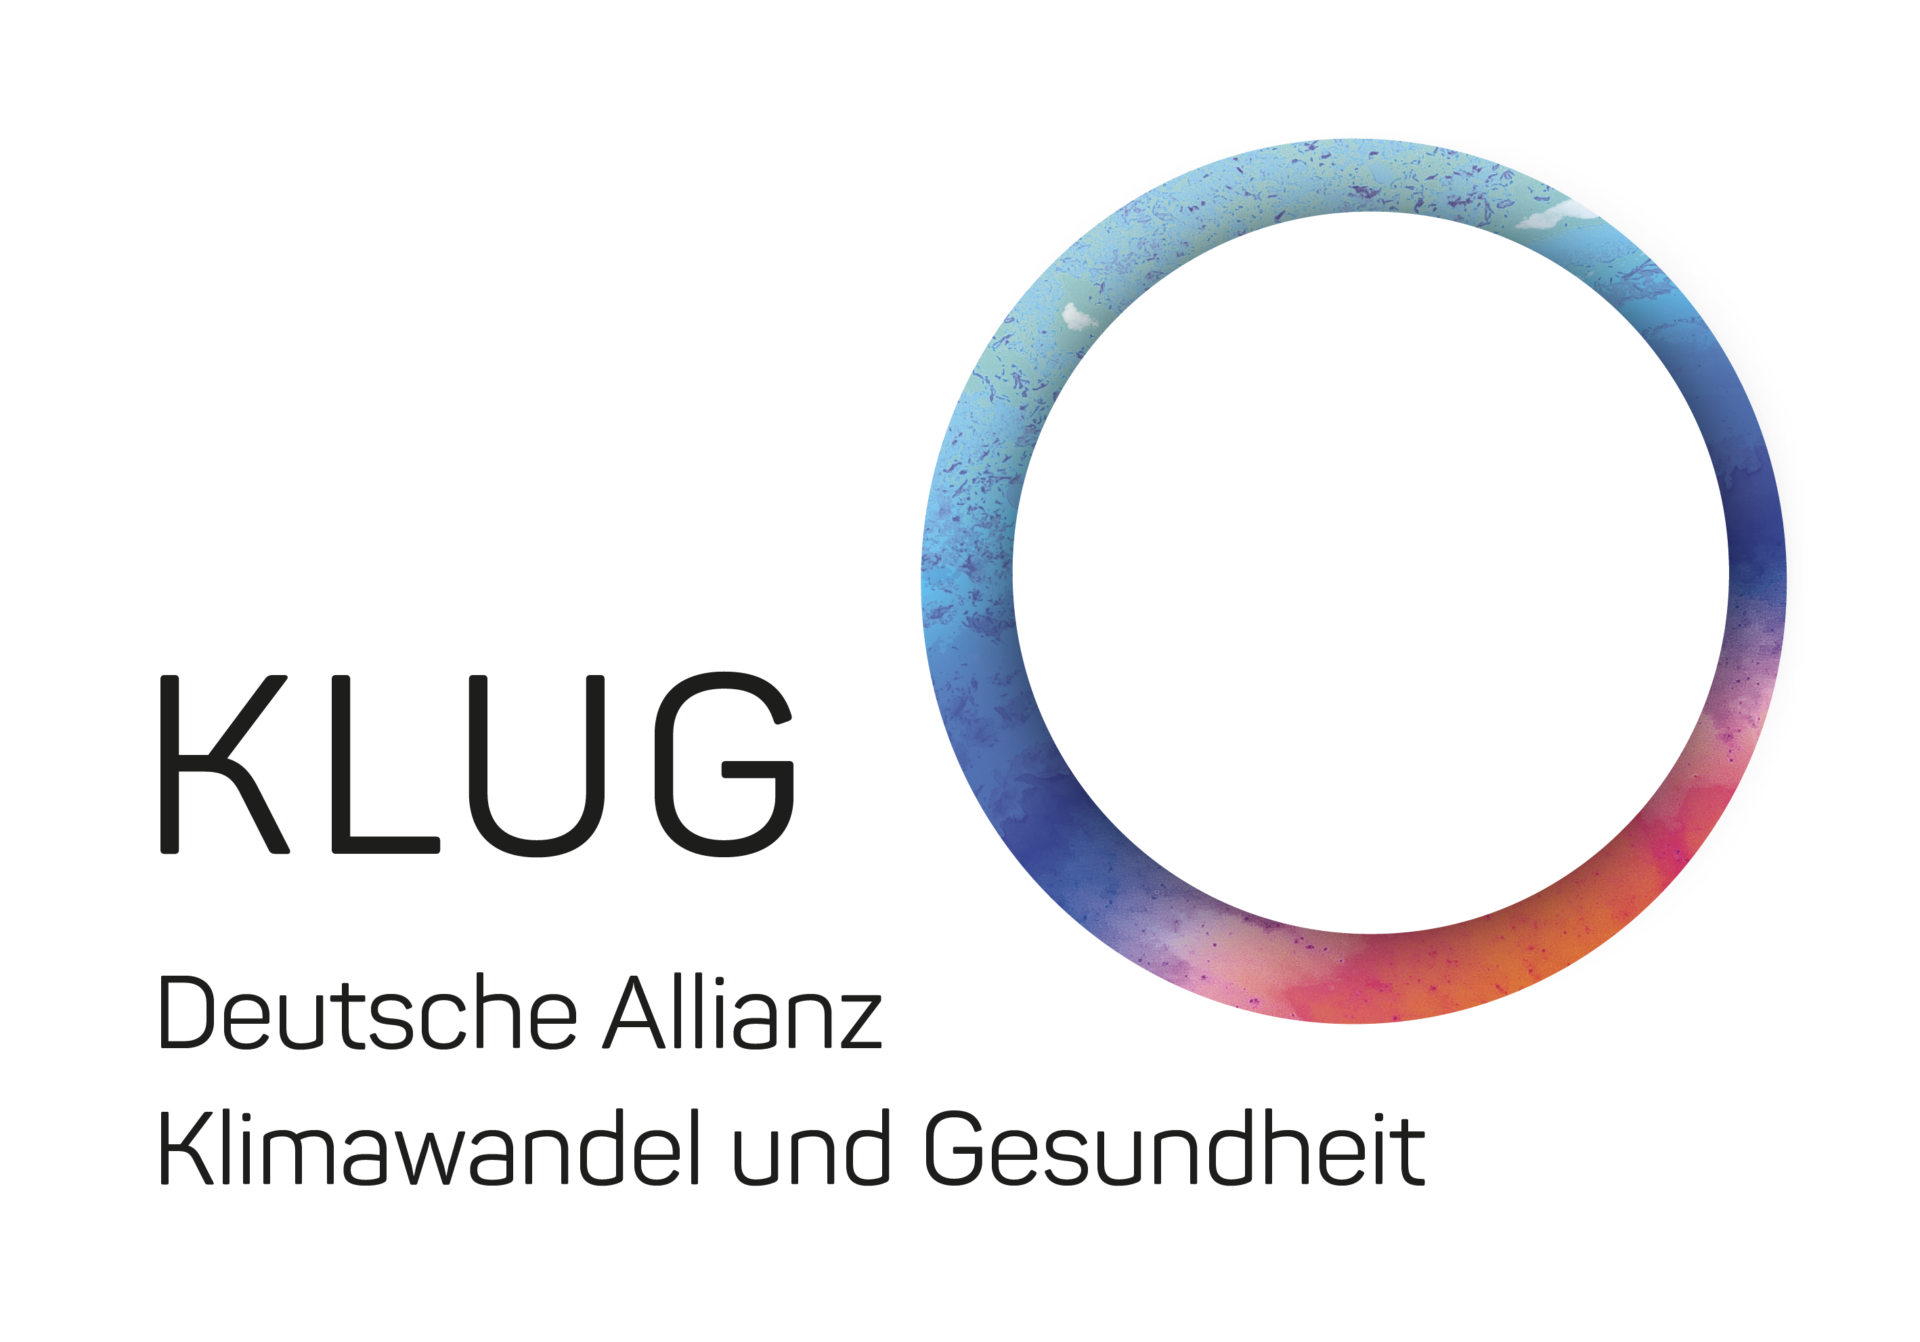 Regionalgruppe Berlin – KLUG Deutsche Allianz Klimawandel und Gesundheit e.V.